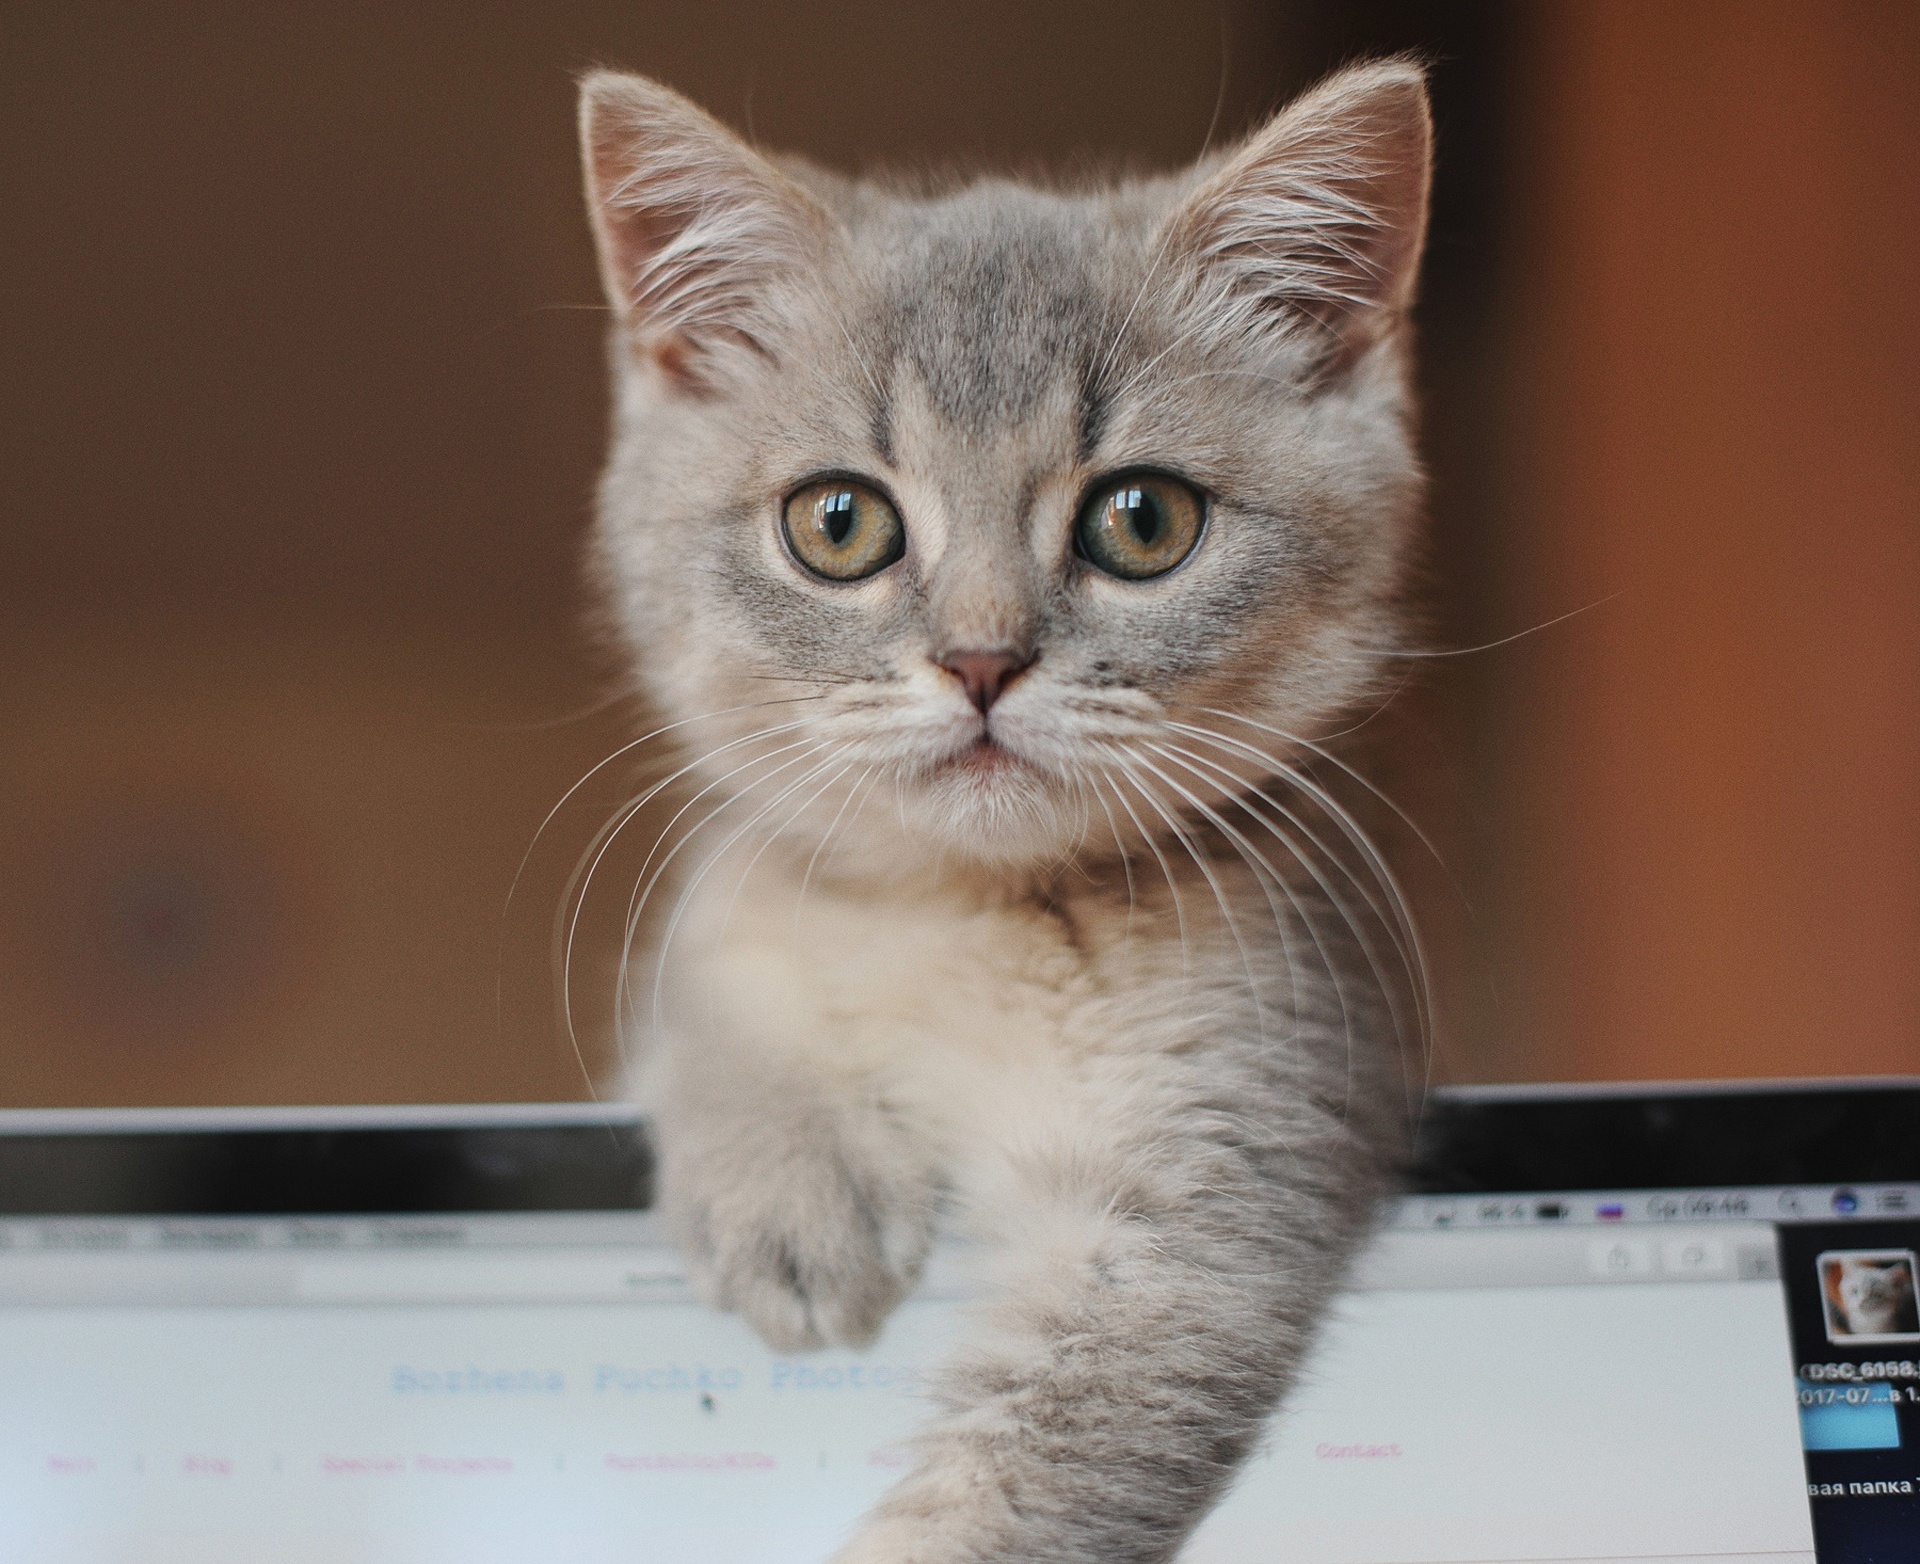 Descarga gratuita de fondo de pantalla para móvil de Animales, Gatos, Gato, Gatito, Bebe Animal.